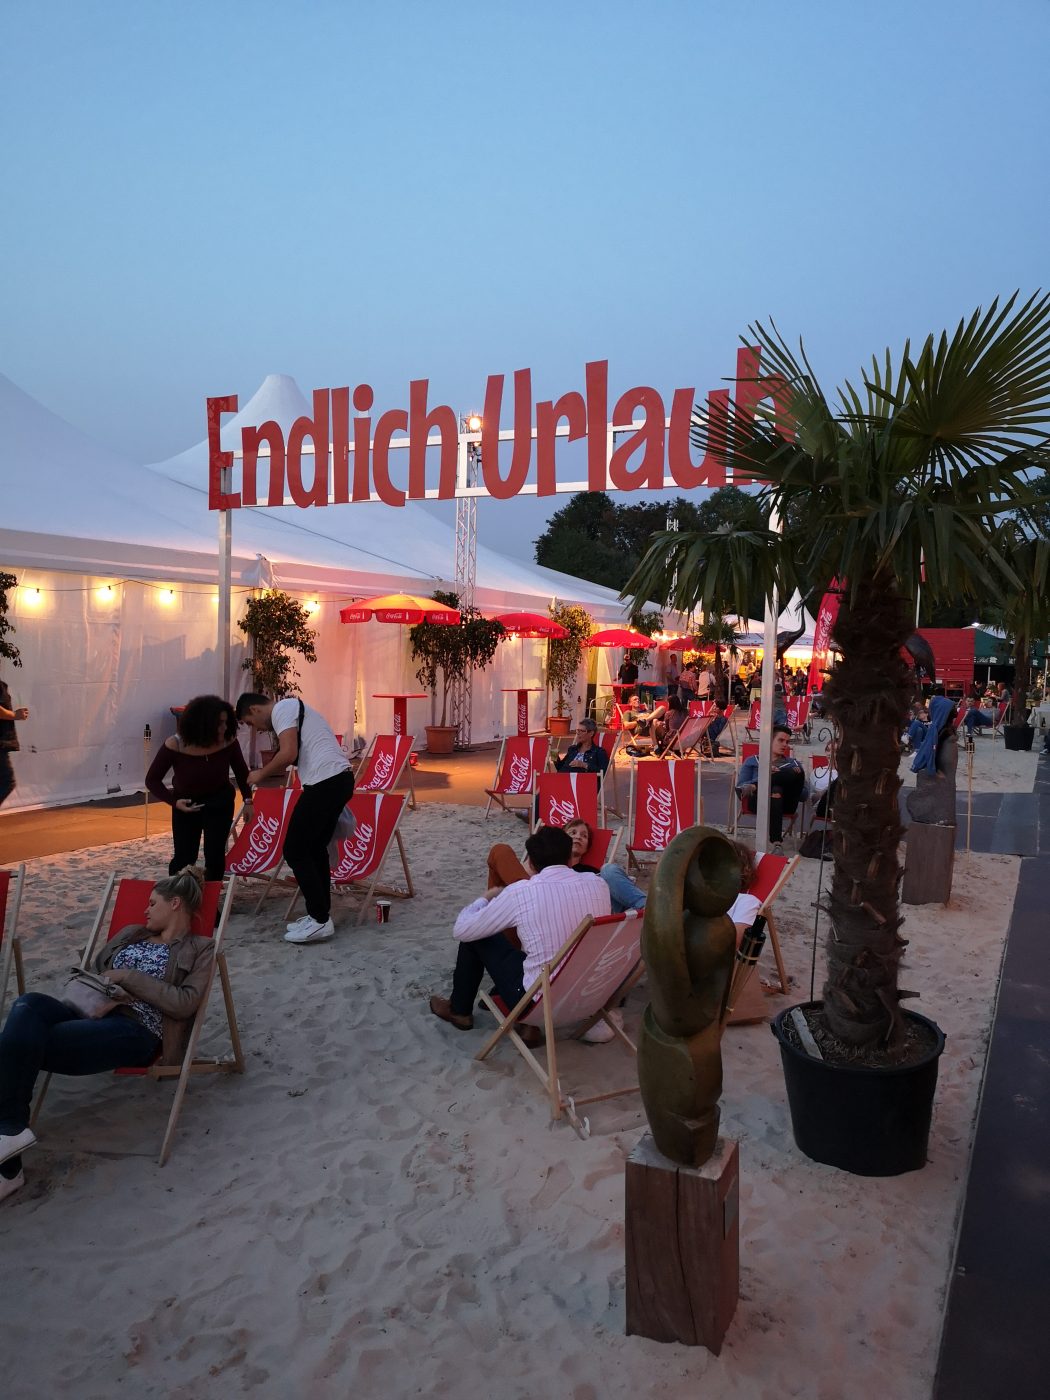 Das Bild zeigt eine Strand-Ecke auf dem Zeltfestival Ruhr